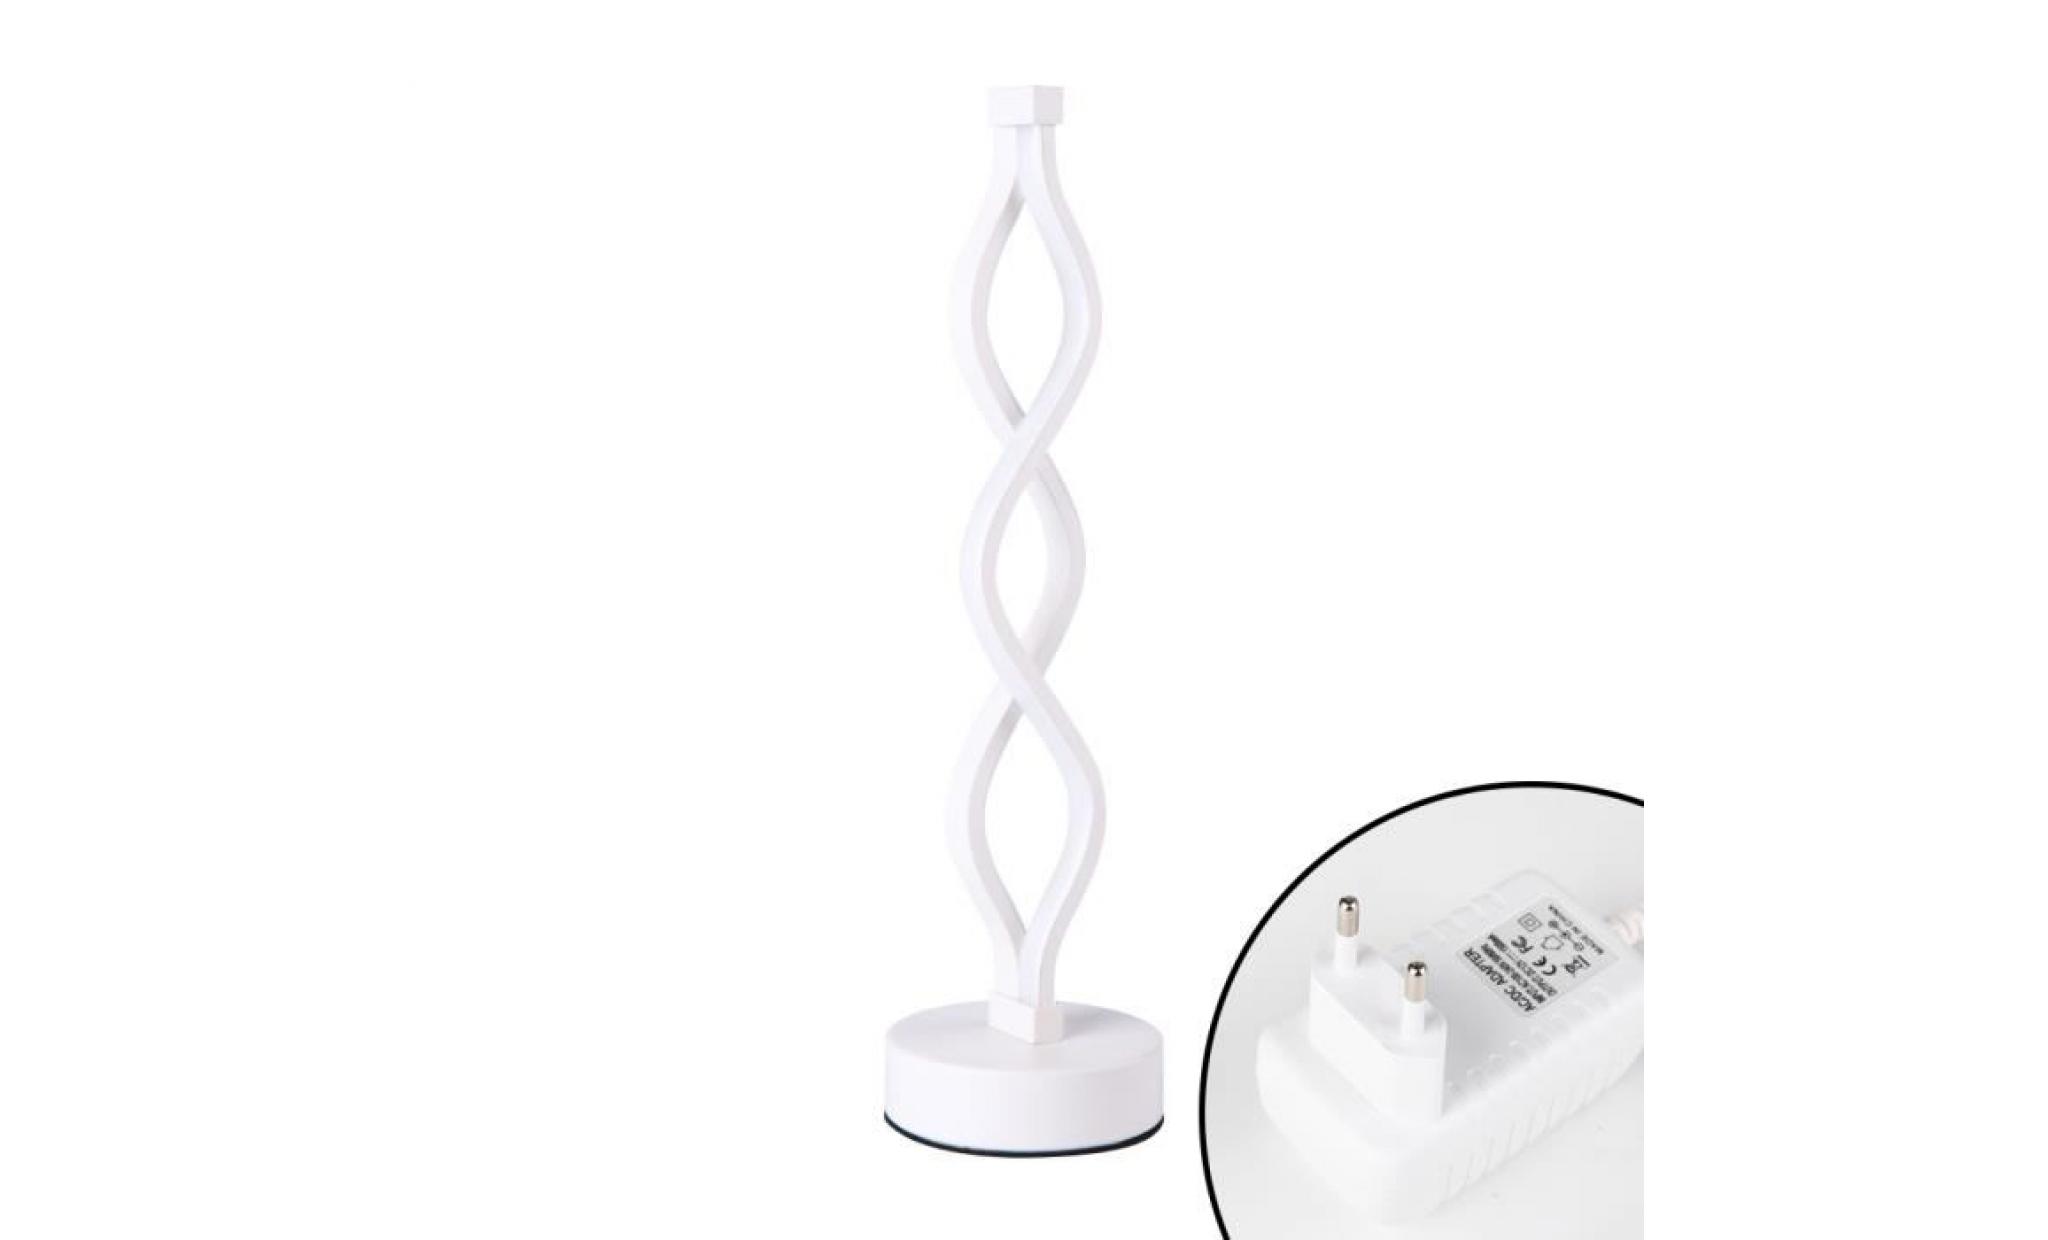 elinkume led lampe de bureau 12w blanc chaud dimming double spirale incurvée lampe de table led design minimaliste creative pas cher